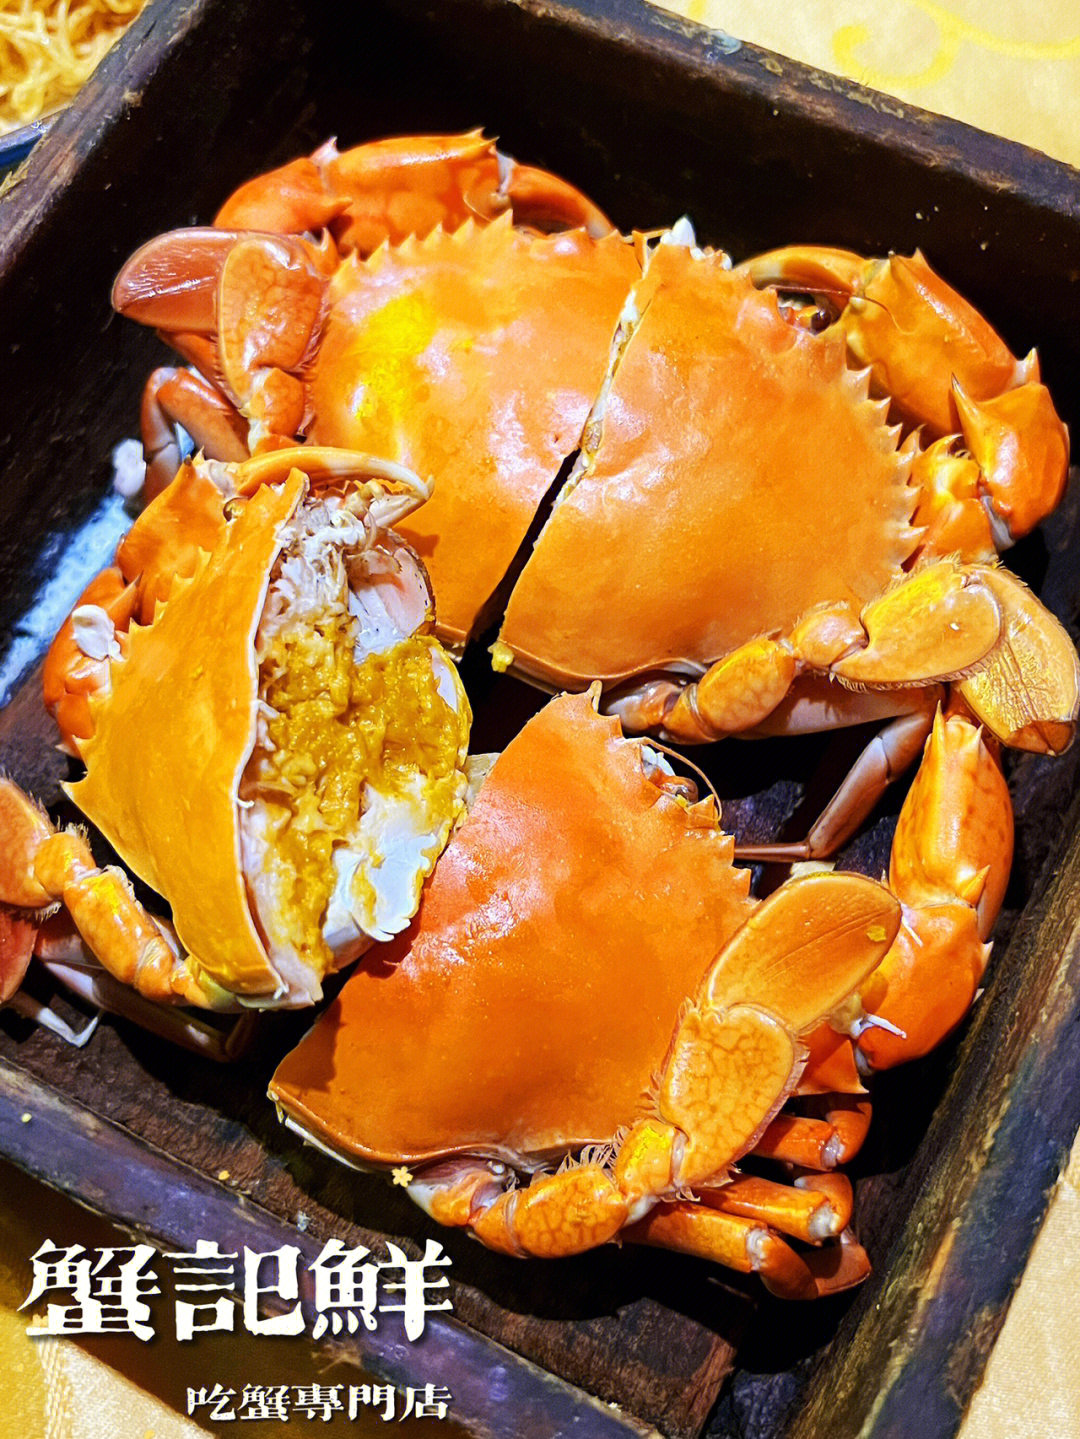 秋天了所有的螃蟹都养的黄黄胖胖的等我吃这家「蟹记鲜·吃蟹专门店